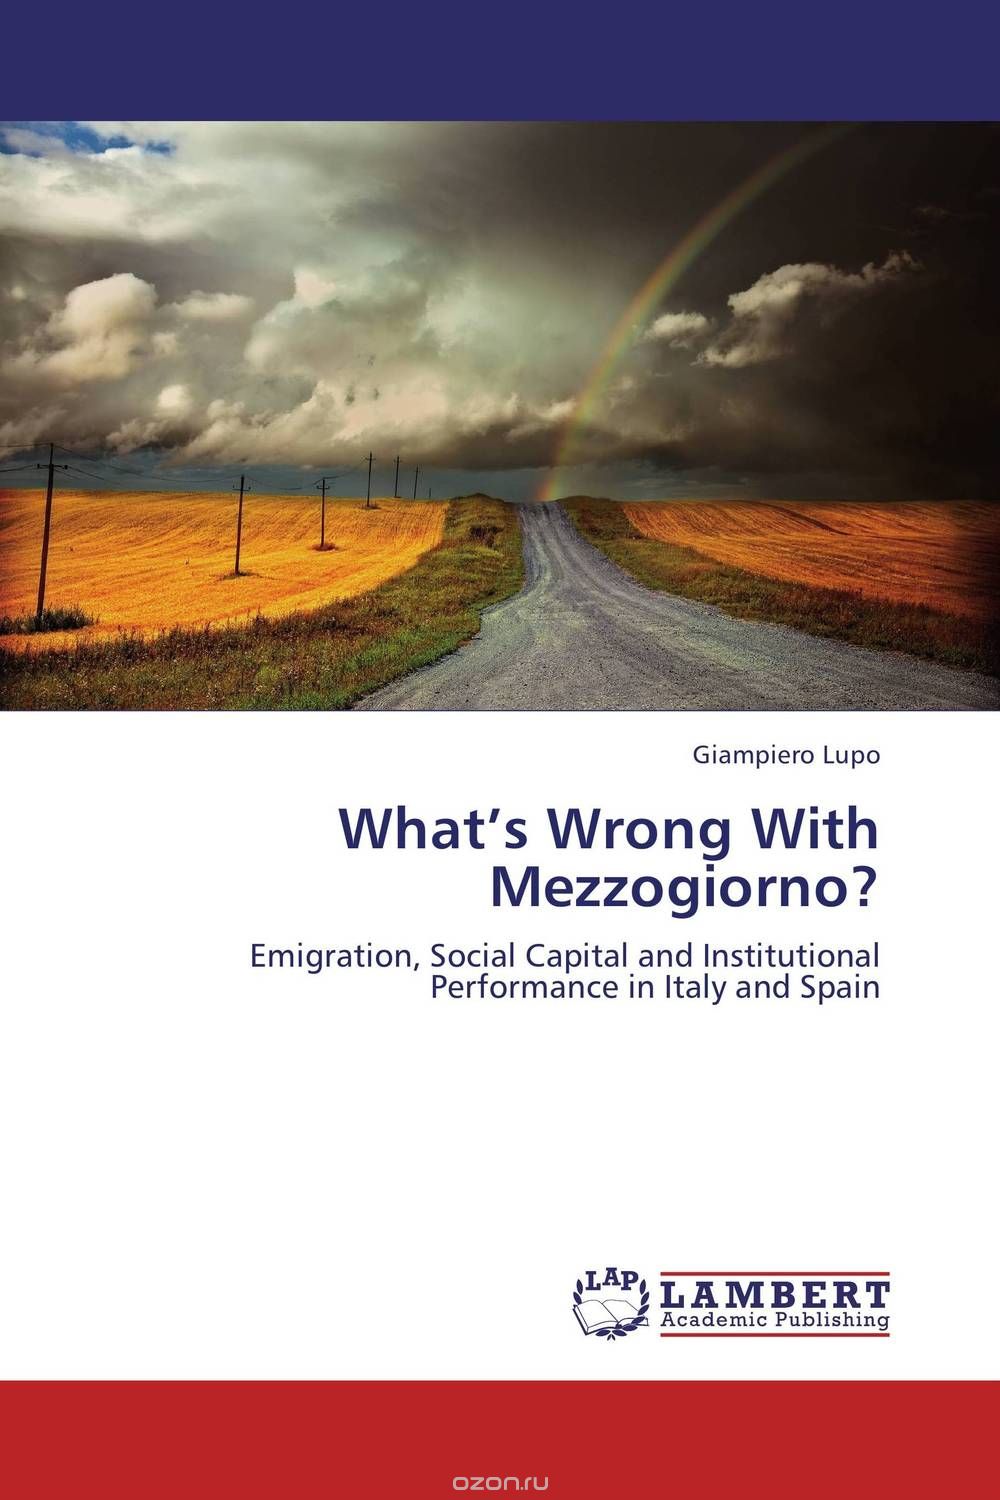 Скачать книгу "What’s Wrong With Mezzogiorno?"